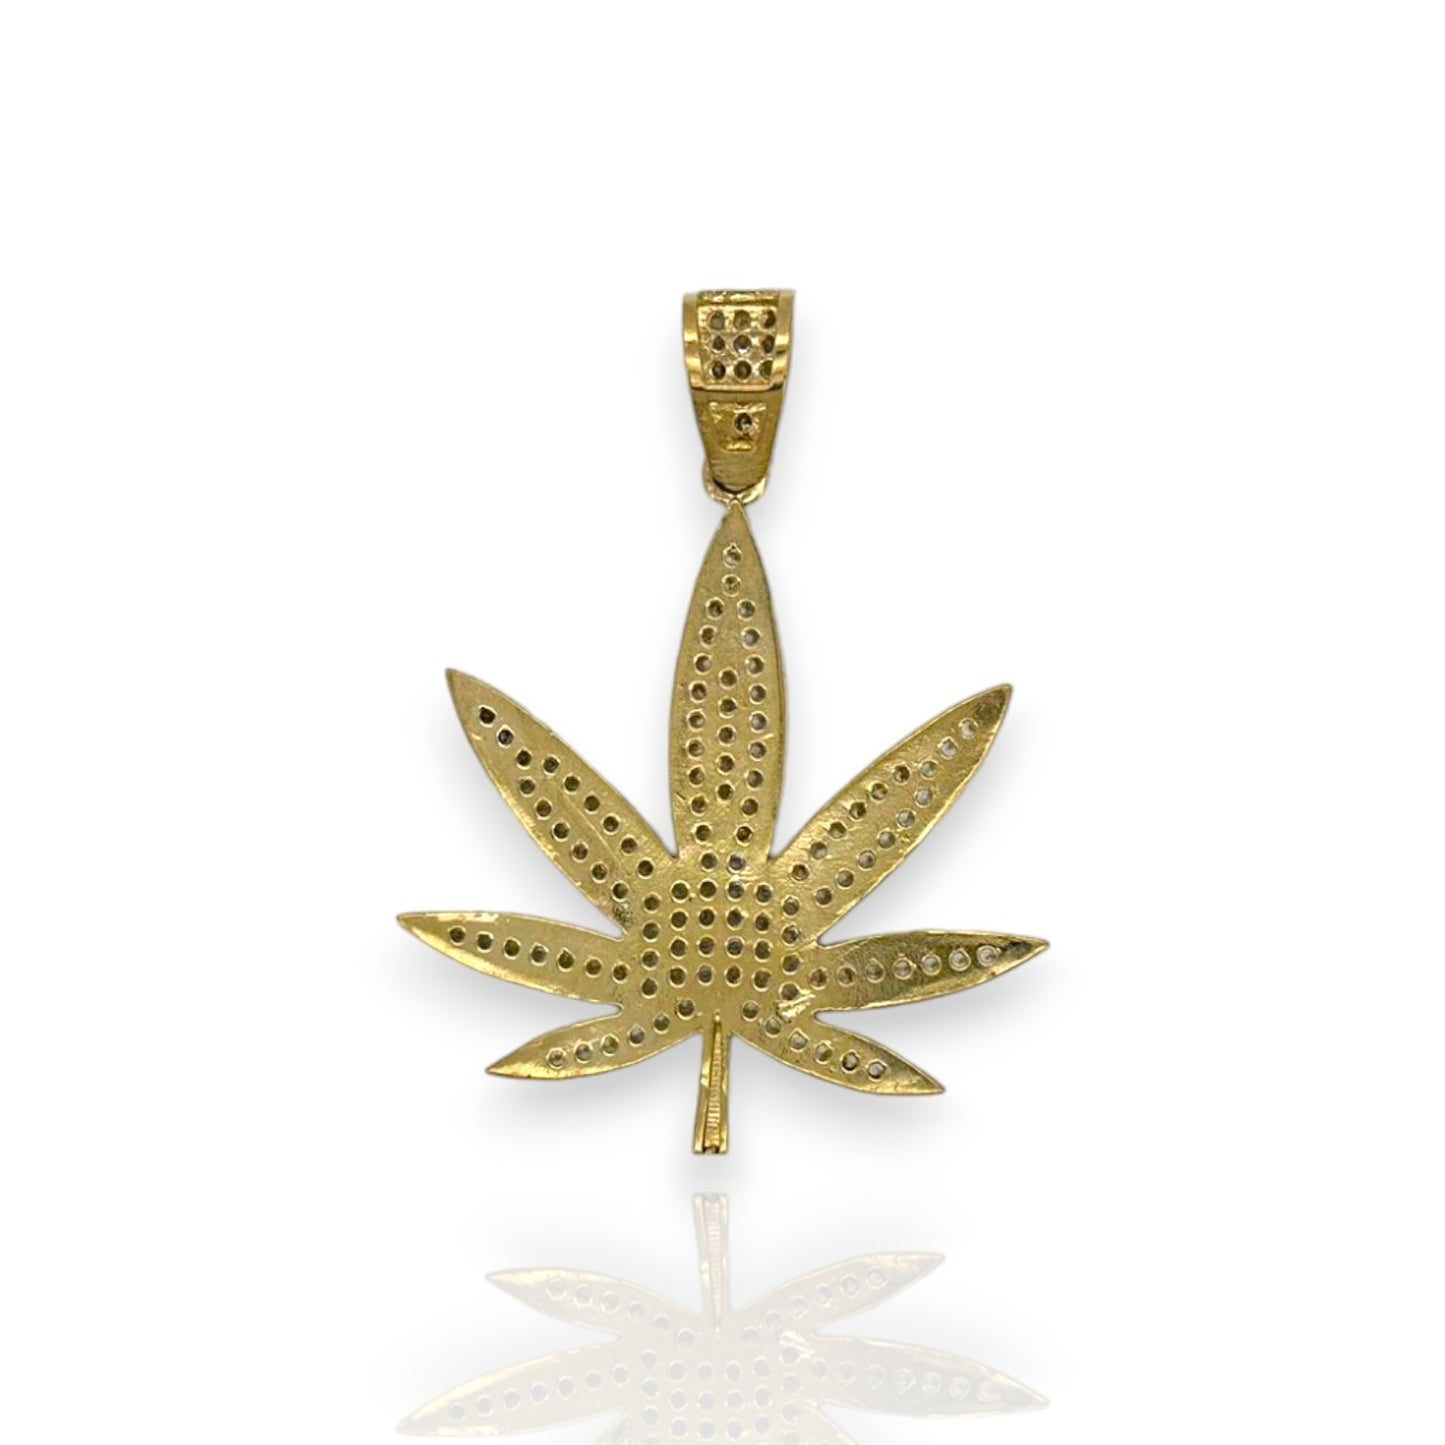 Colgante de marihuana "Weed" de dos tonos con circonita cúbica - Oro amarillo de 10 k